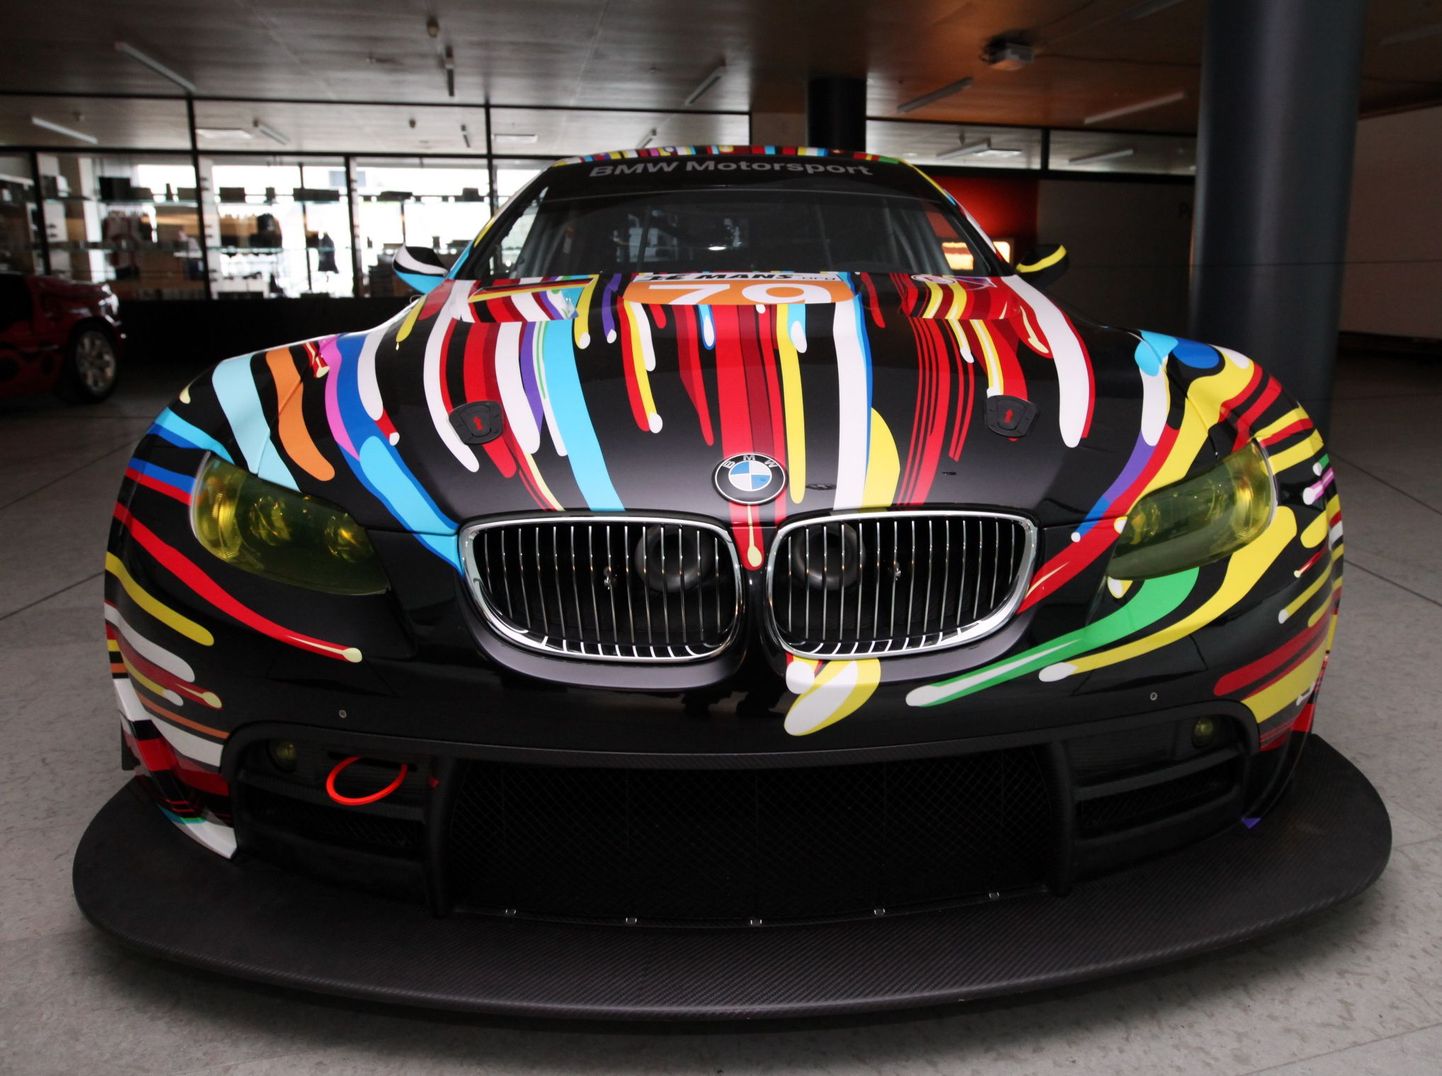 BMW kunstiautode ekspositsioon KUMUs